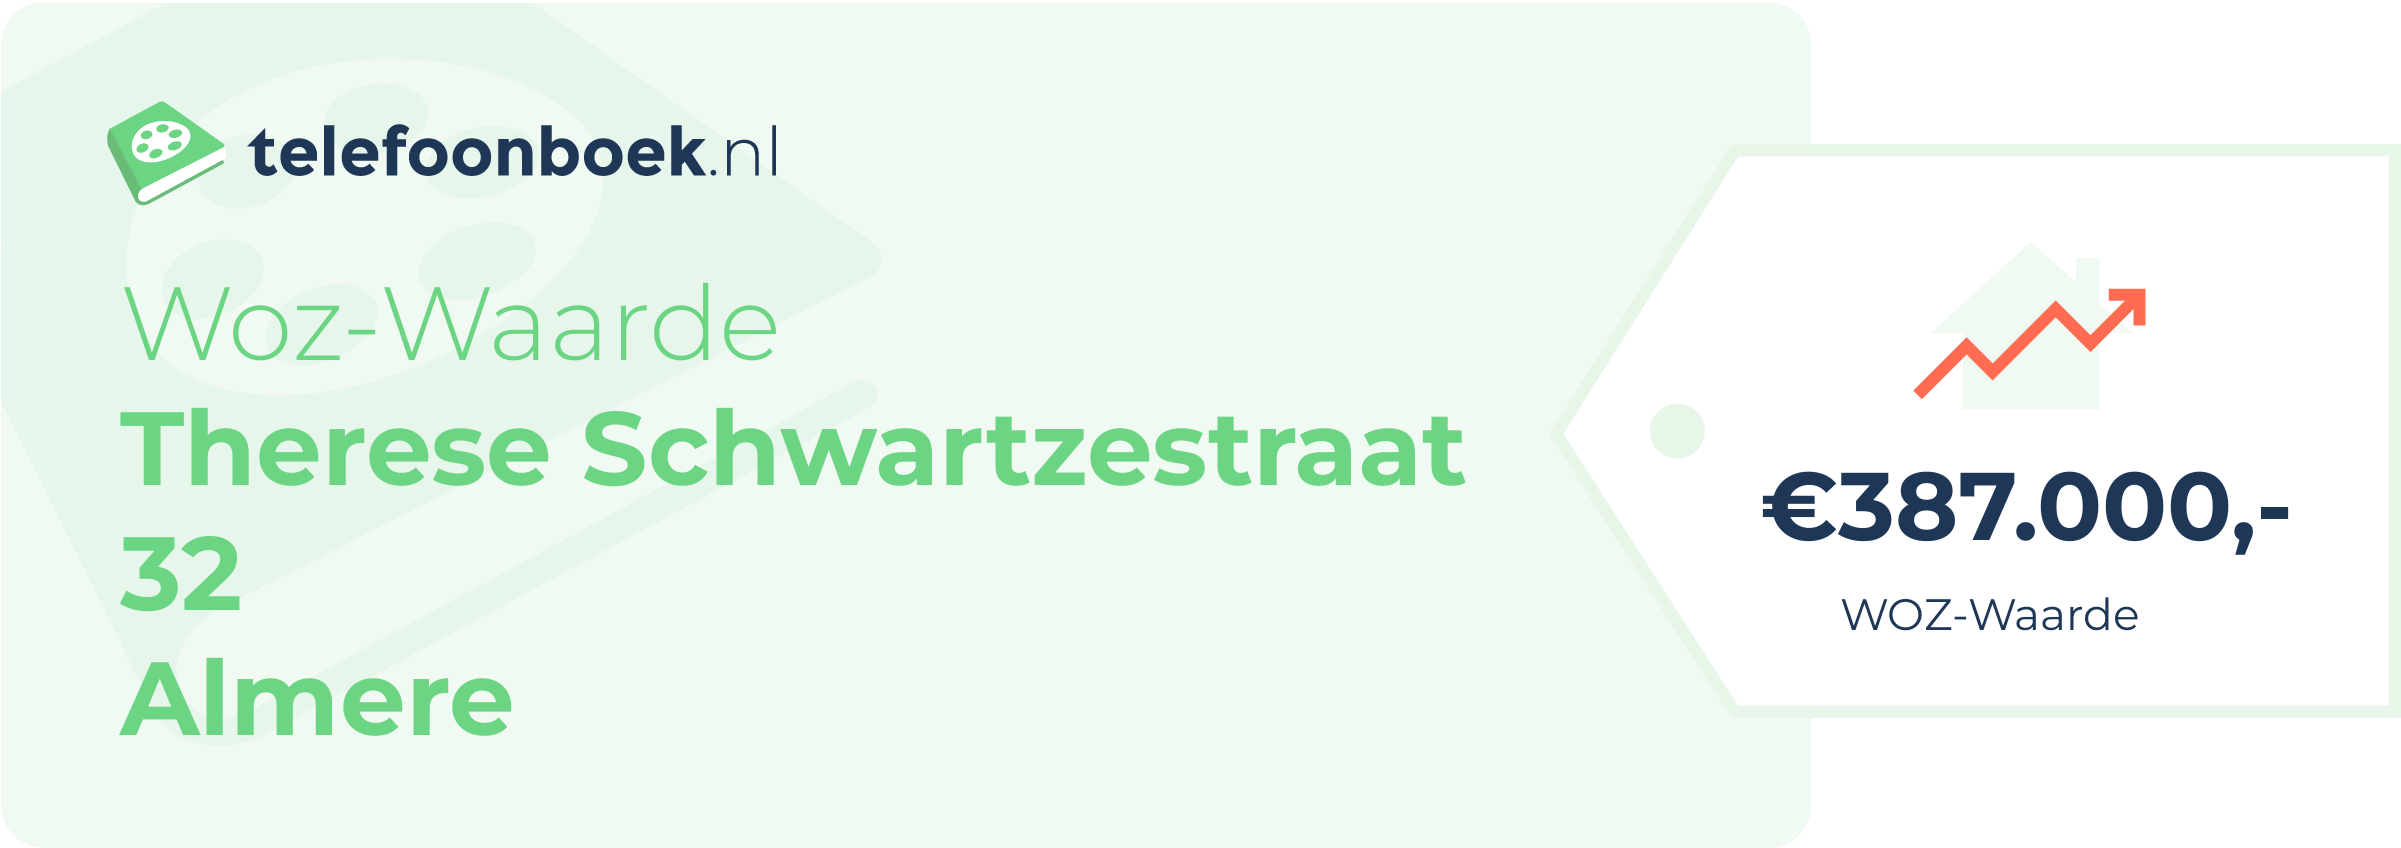 WOZ-waarde Therese Schwartzestraat 32 Almere